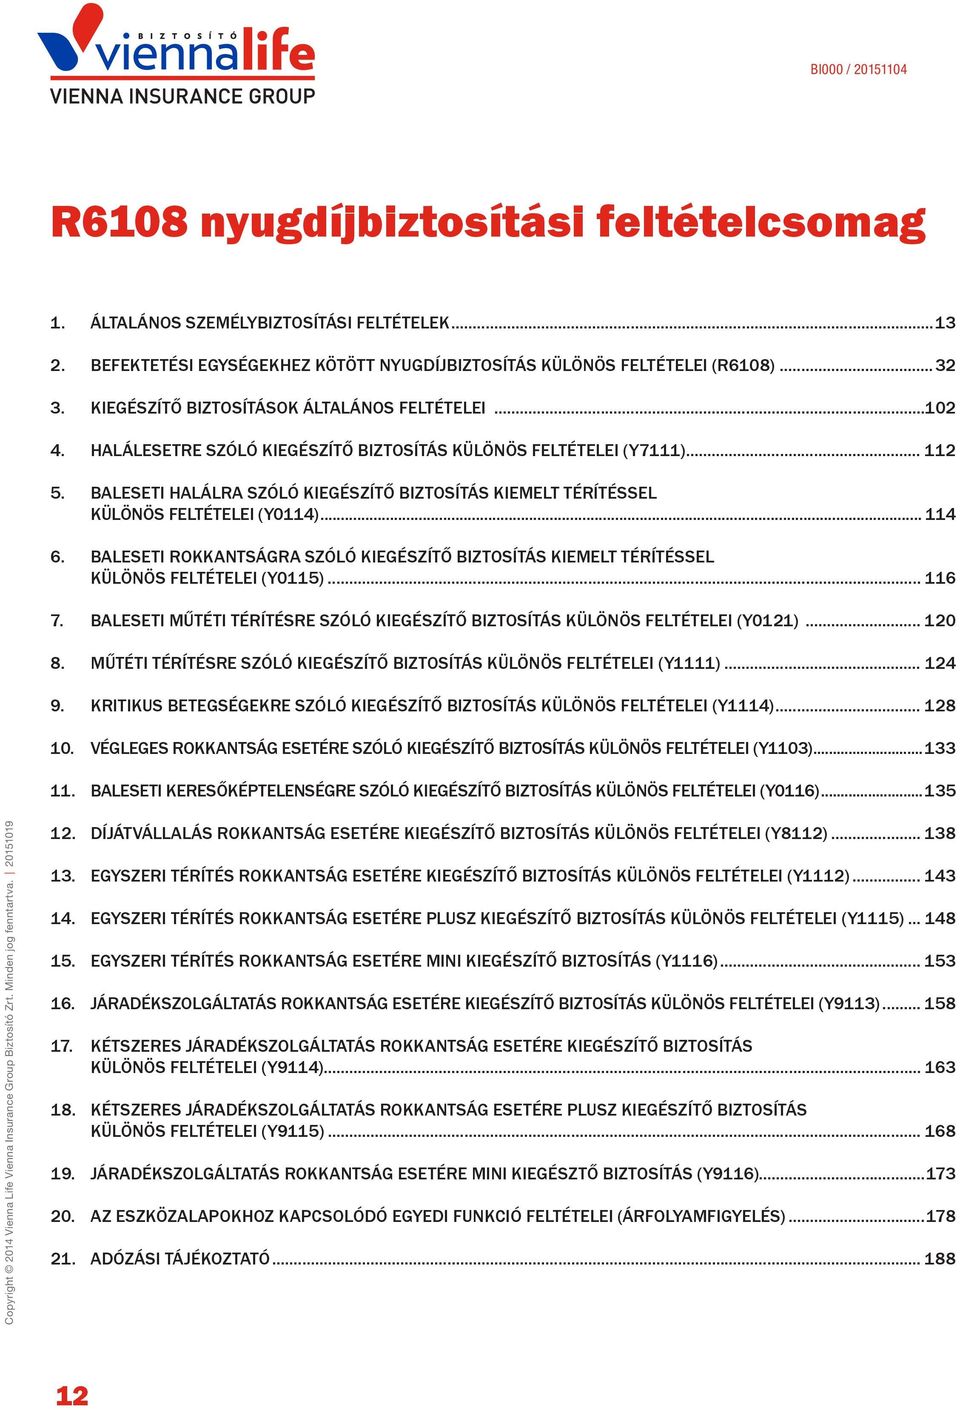 BALESETI HALÁLRA SZÓLÓ KIEGÉSZÍTŐ BIZTOSÍTÁS KIEMELT TÉRÍTÉSSEL KÜLÖNÖS FELTÉTELEI (Y0114)... 114 6. BALESETI ROKKANTSÁGRA SZÓLÓ KIEGÉSZÍTŐ BIZTOSÍTÁS KIEMELT TÉRÍTÉSSEL KÜLÖNÖS FELTÉTELEI (Y0115).